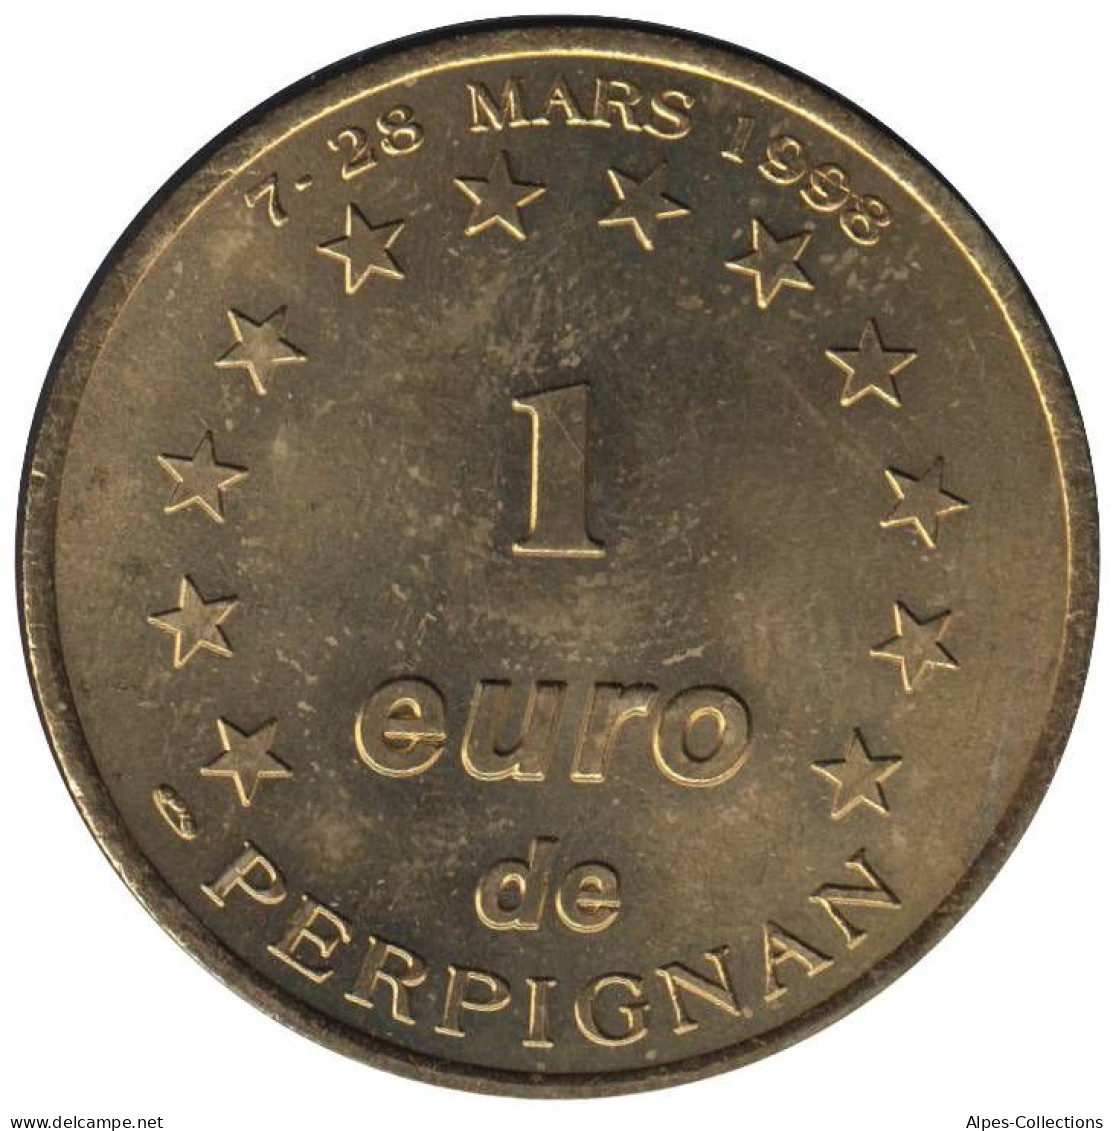 PERPIGNAN - EU0010.1 - 1 EURO DES VILLES - Réf: T538 - 1998 - Euros Of The Cities